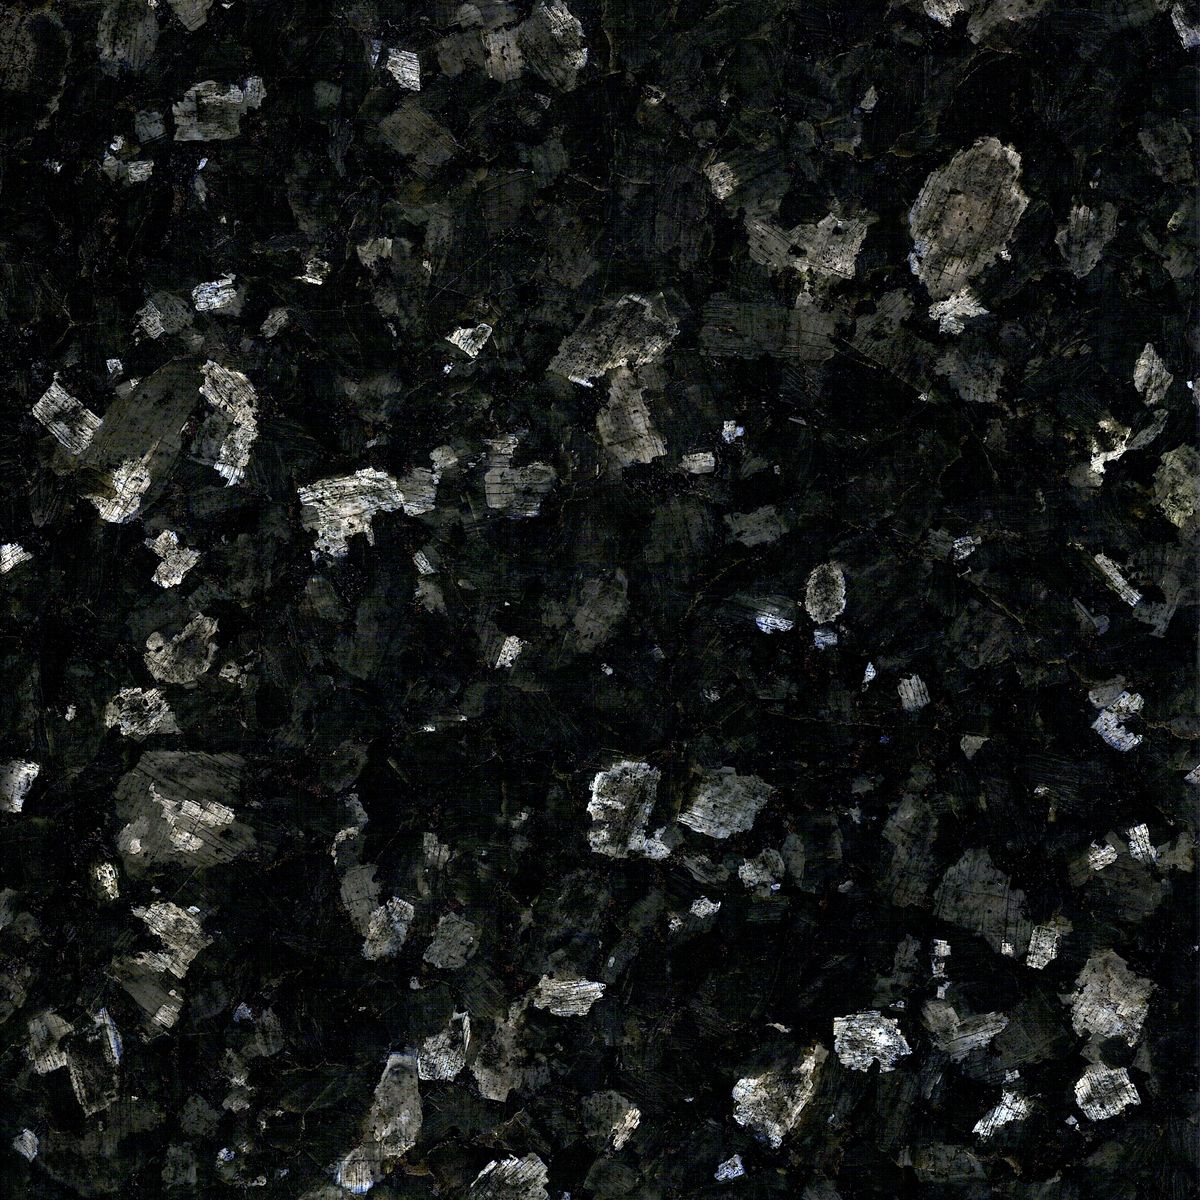 labrador scuro - labrador dark granites